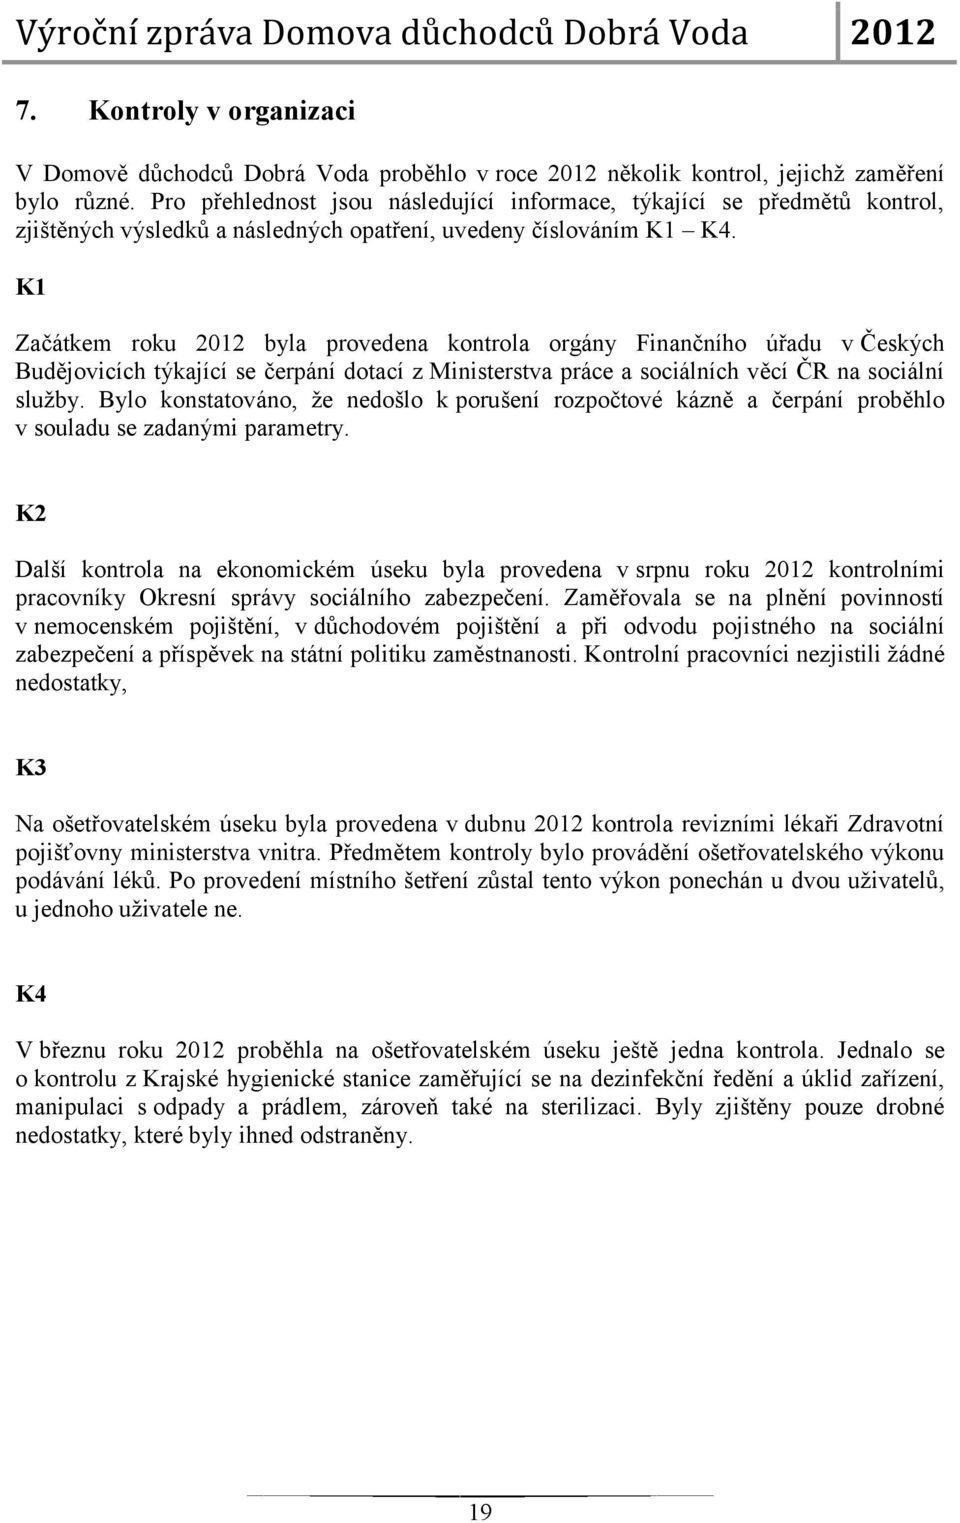 K1 Začátkem roku 2012 byla provedena kontrola orgány Finančního úřadu v Českých Budějovicích týkající se čerpání dotací z Ministerstva práce a sociálních věcí ČR na sociální služby.